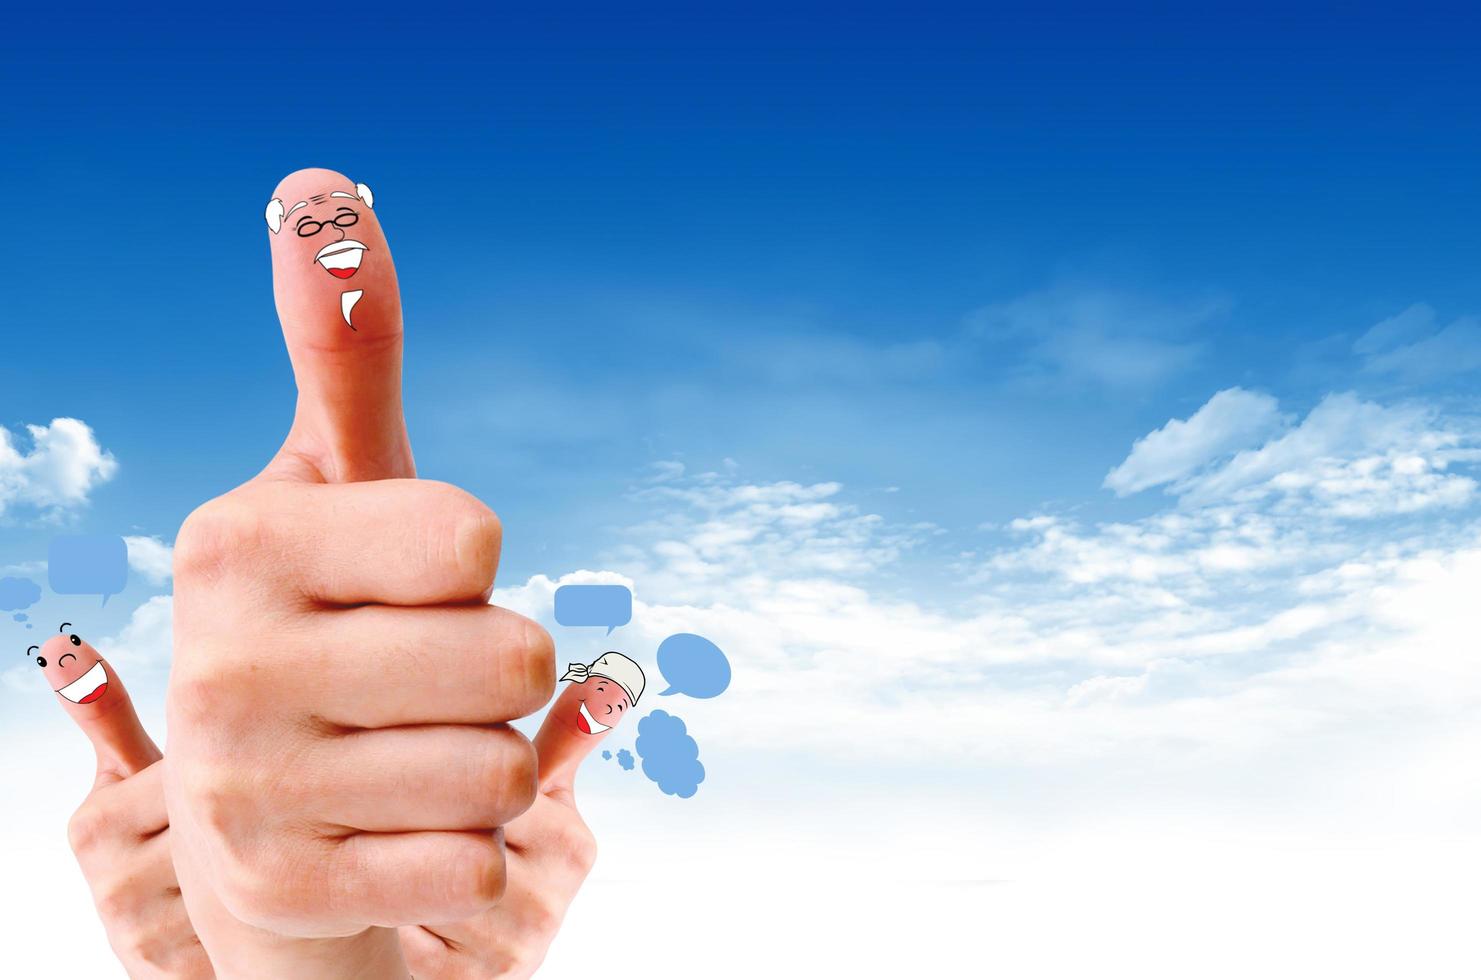 gelukkige groep vingergezichten als sociaal netwerk met spraak foto